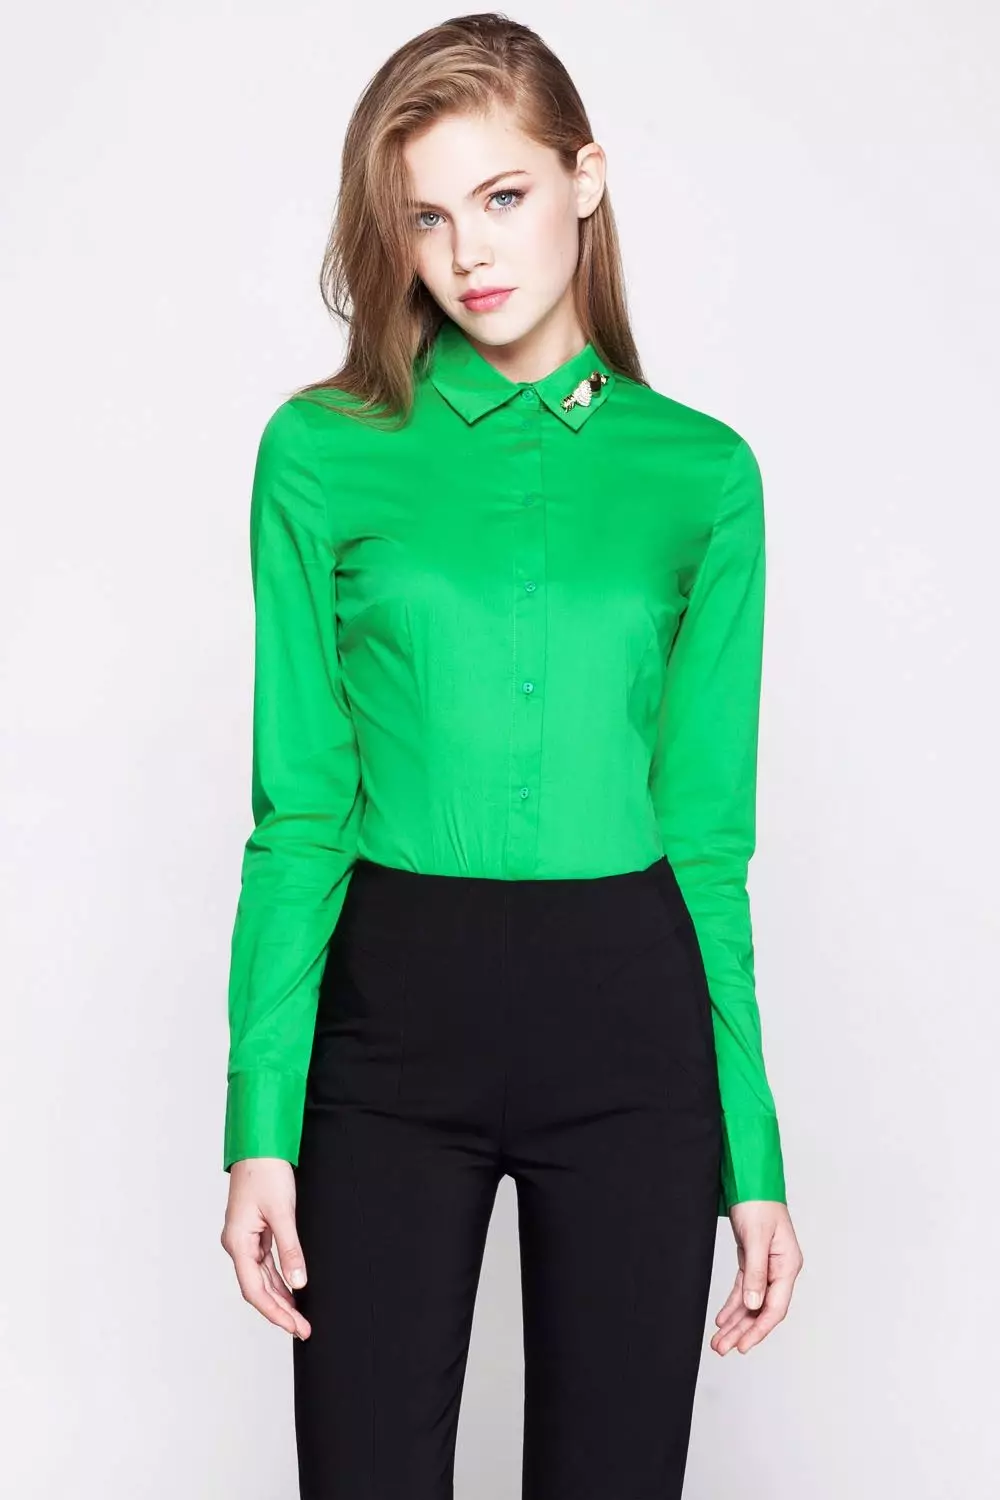 camisas verdes (51 fotos): O que está vestindo, verde escuro e luz modelos verdes 1232_24